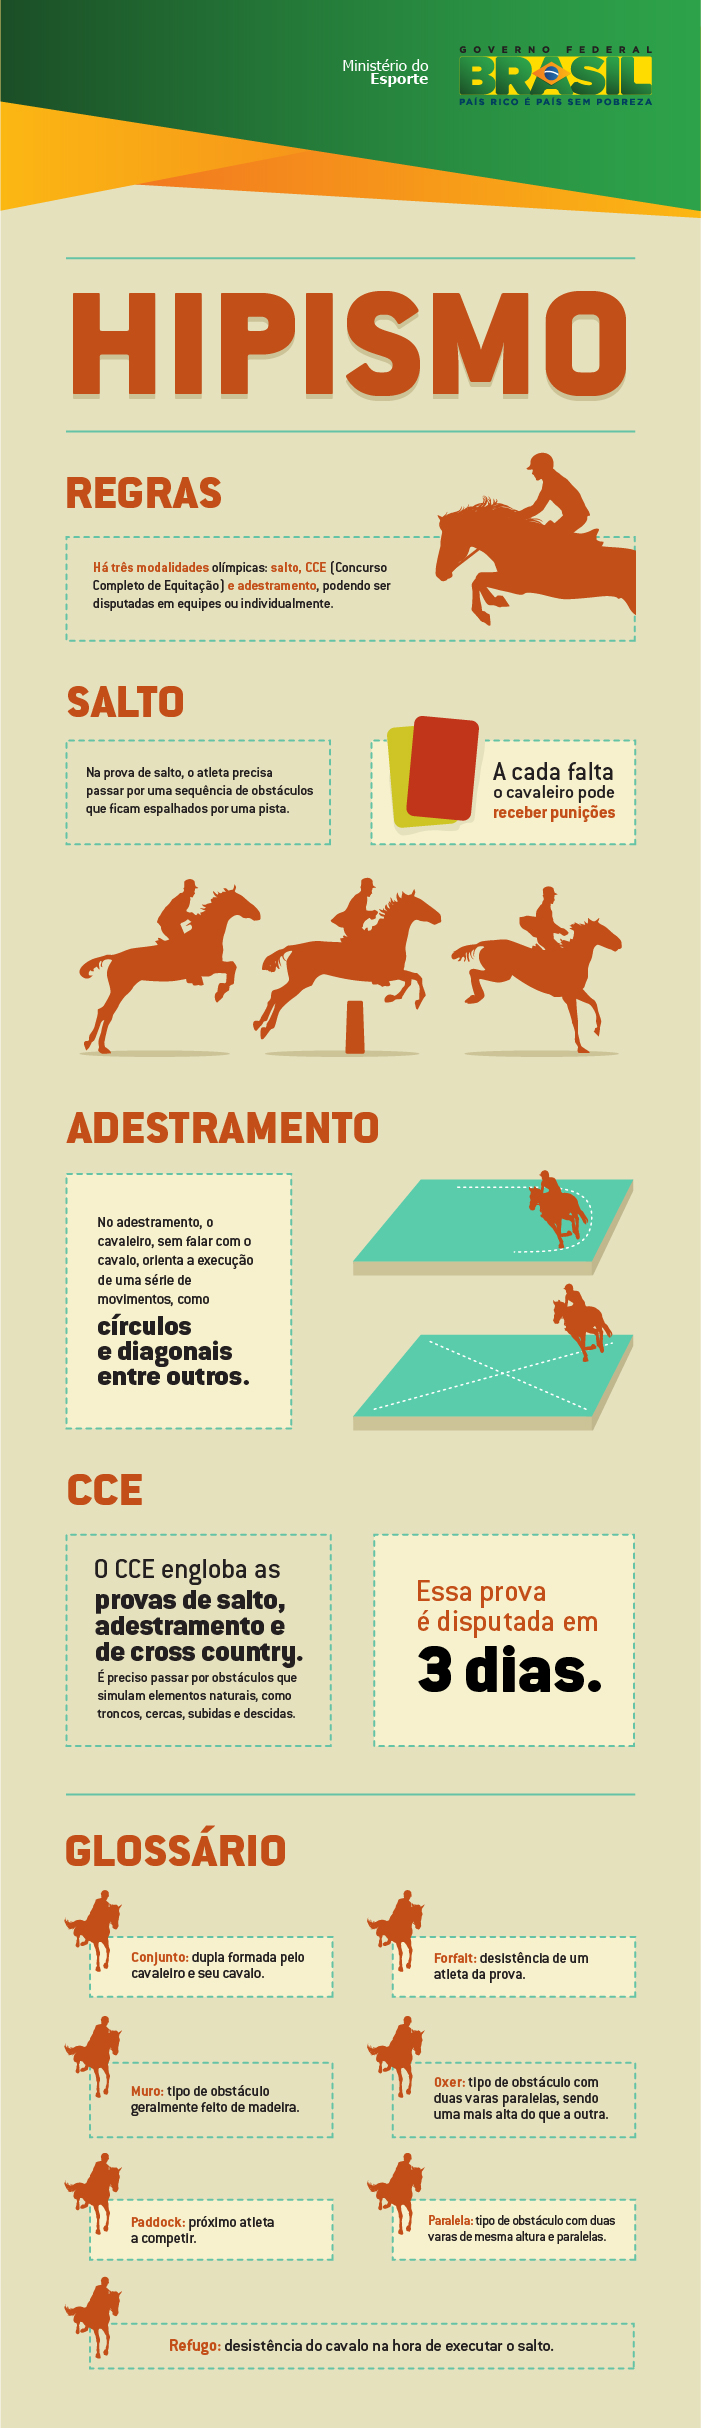 Jogos com cavalos – Hipismo&Co